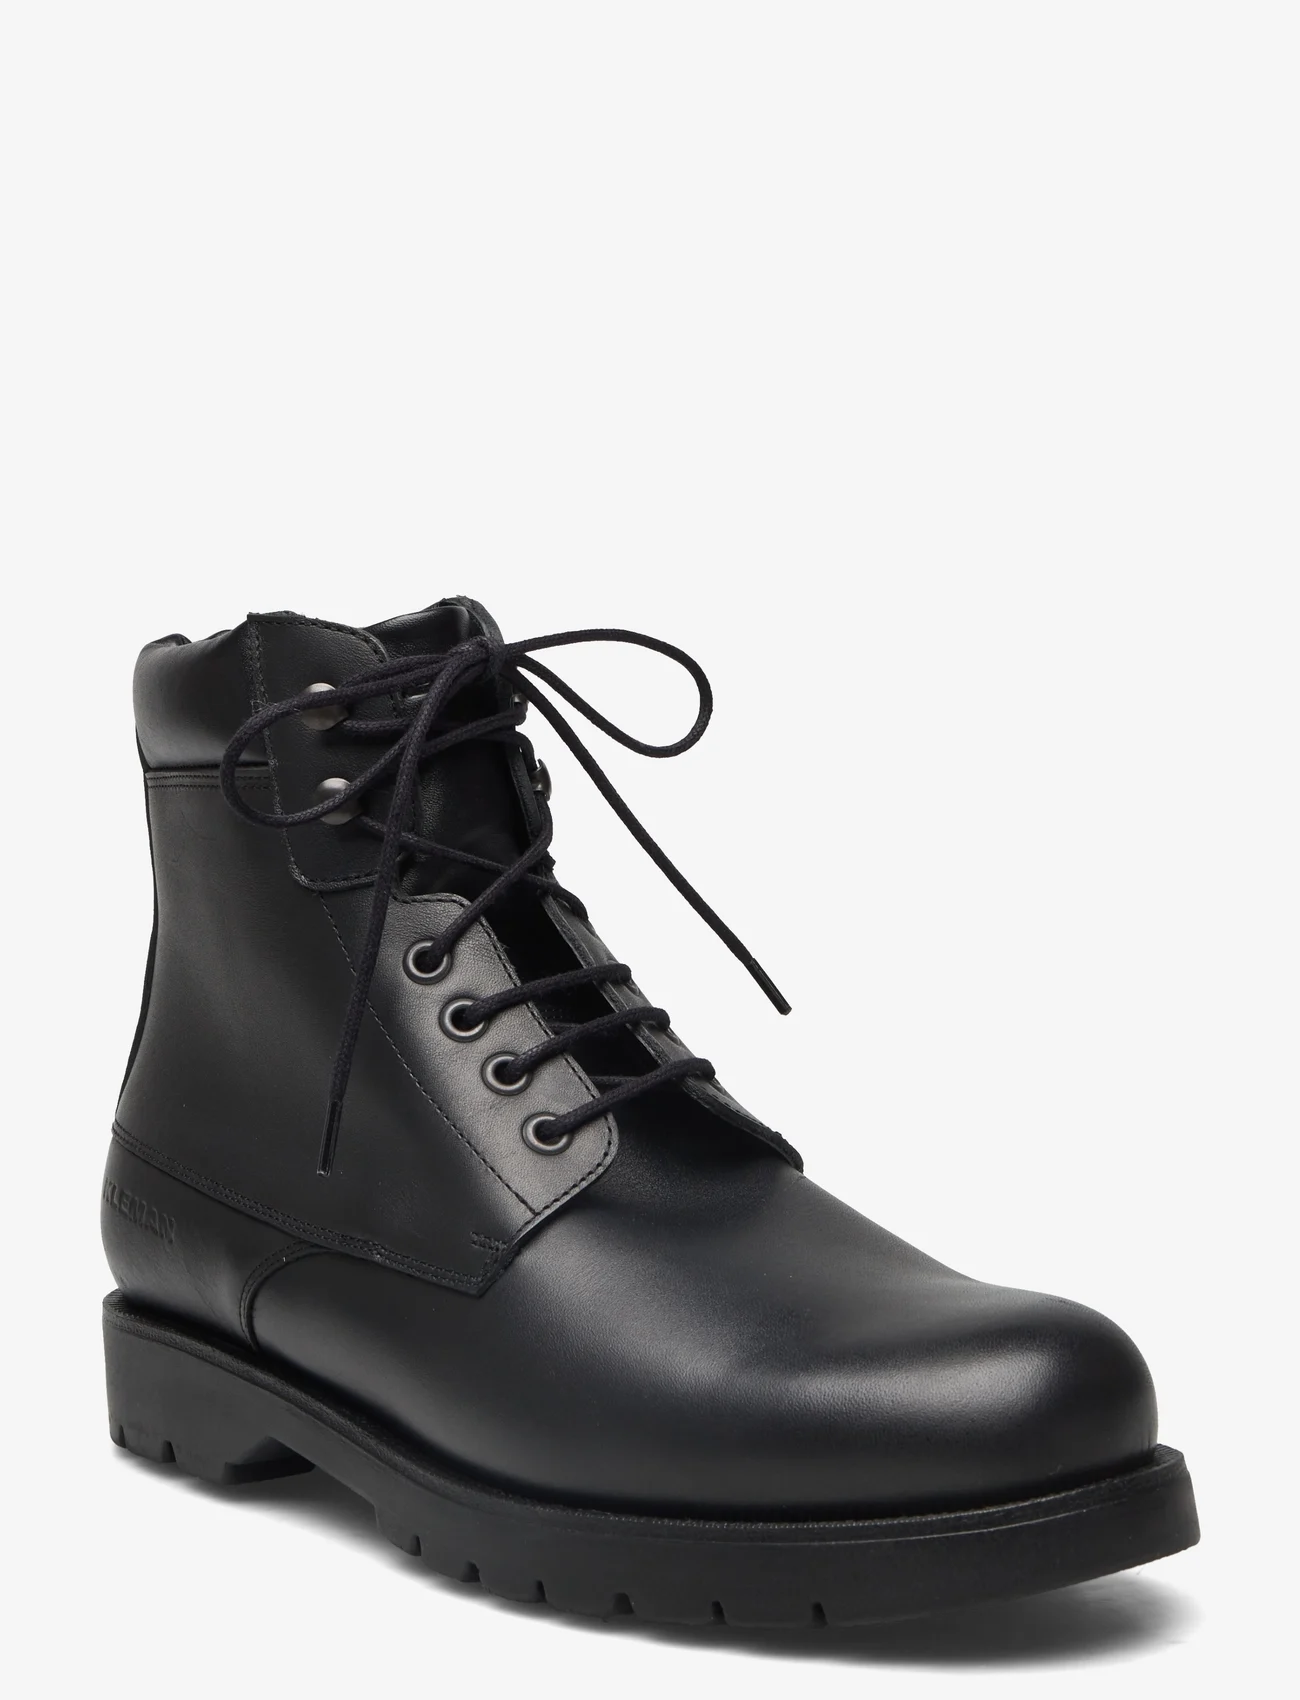 KLEMAN - COMBAT - shoes - noir - 0